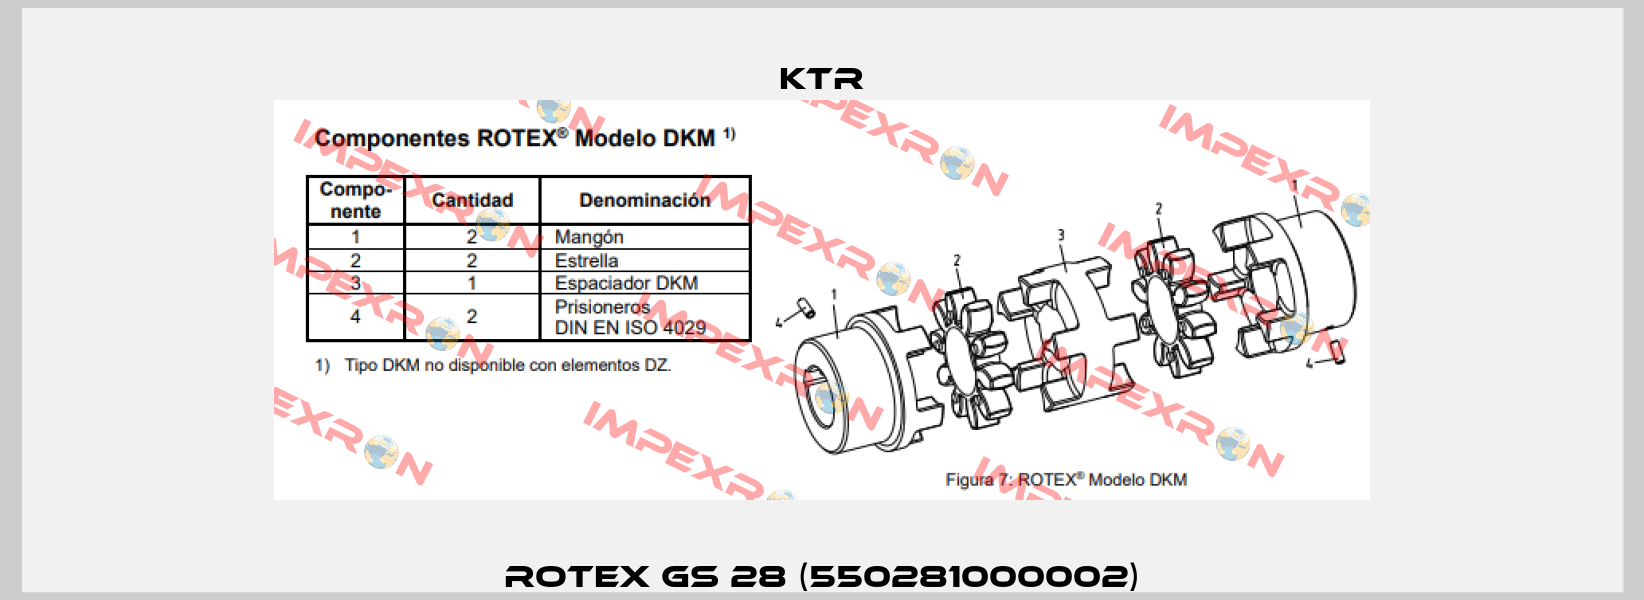 ROTEX GS 28 (550281000002) KTR